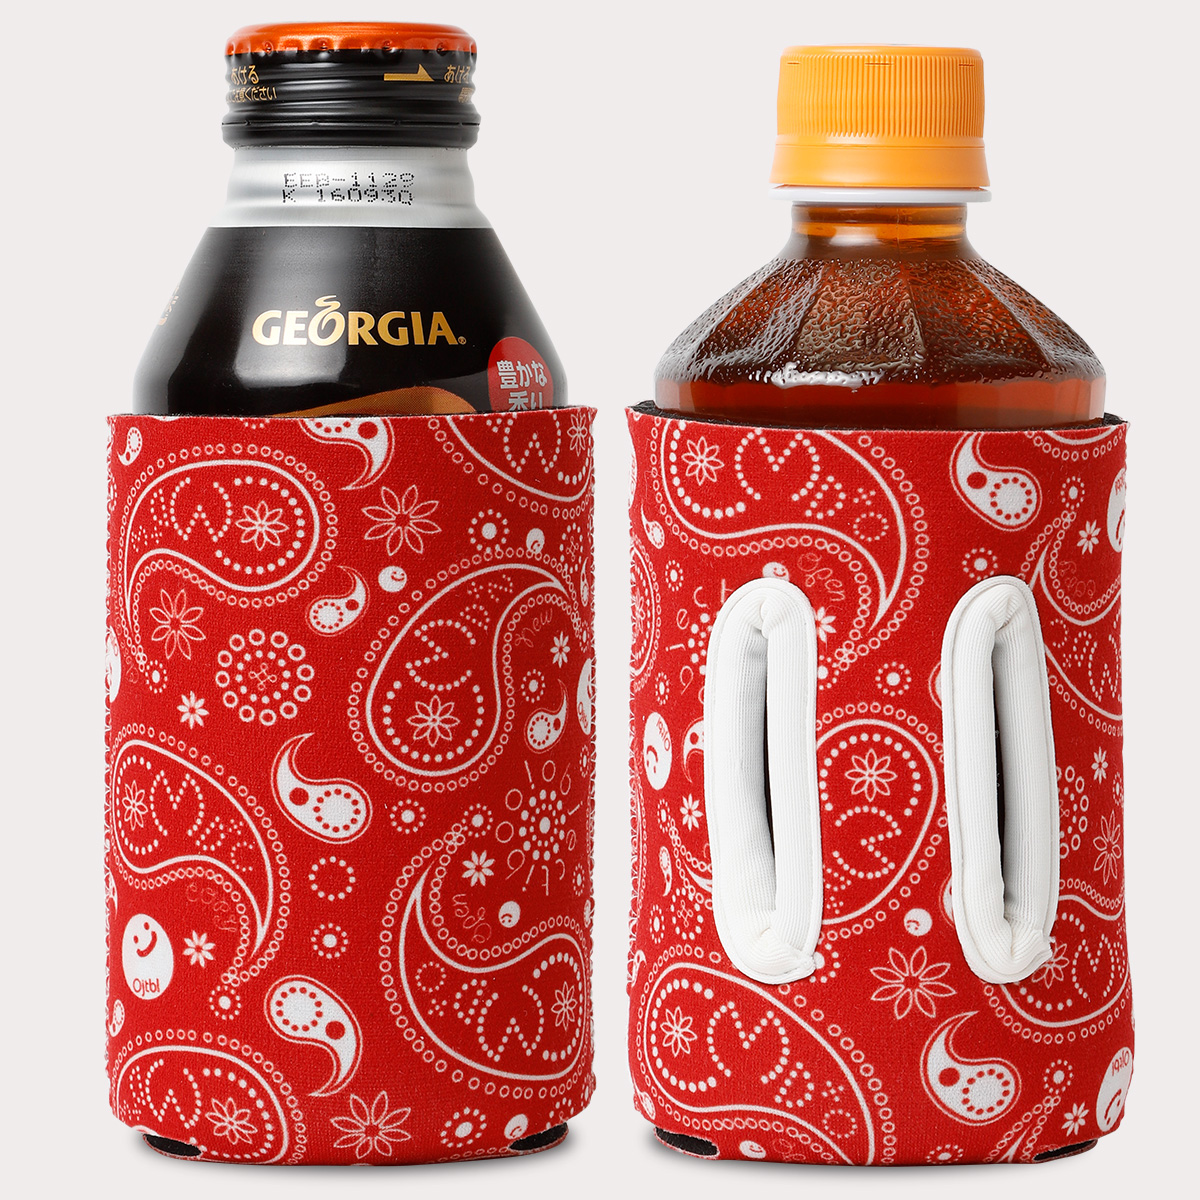 通せるクージー350 Referenceはペットボトル・大きめの缶コーヒーにも使えます